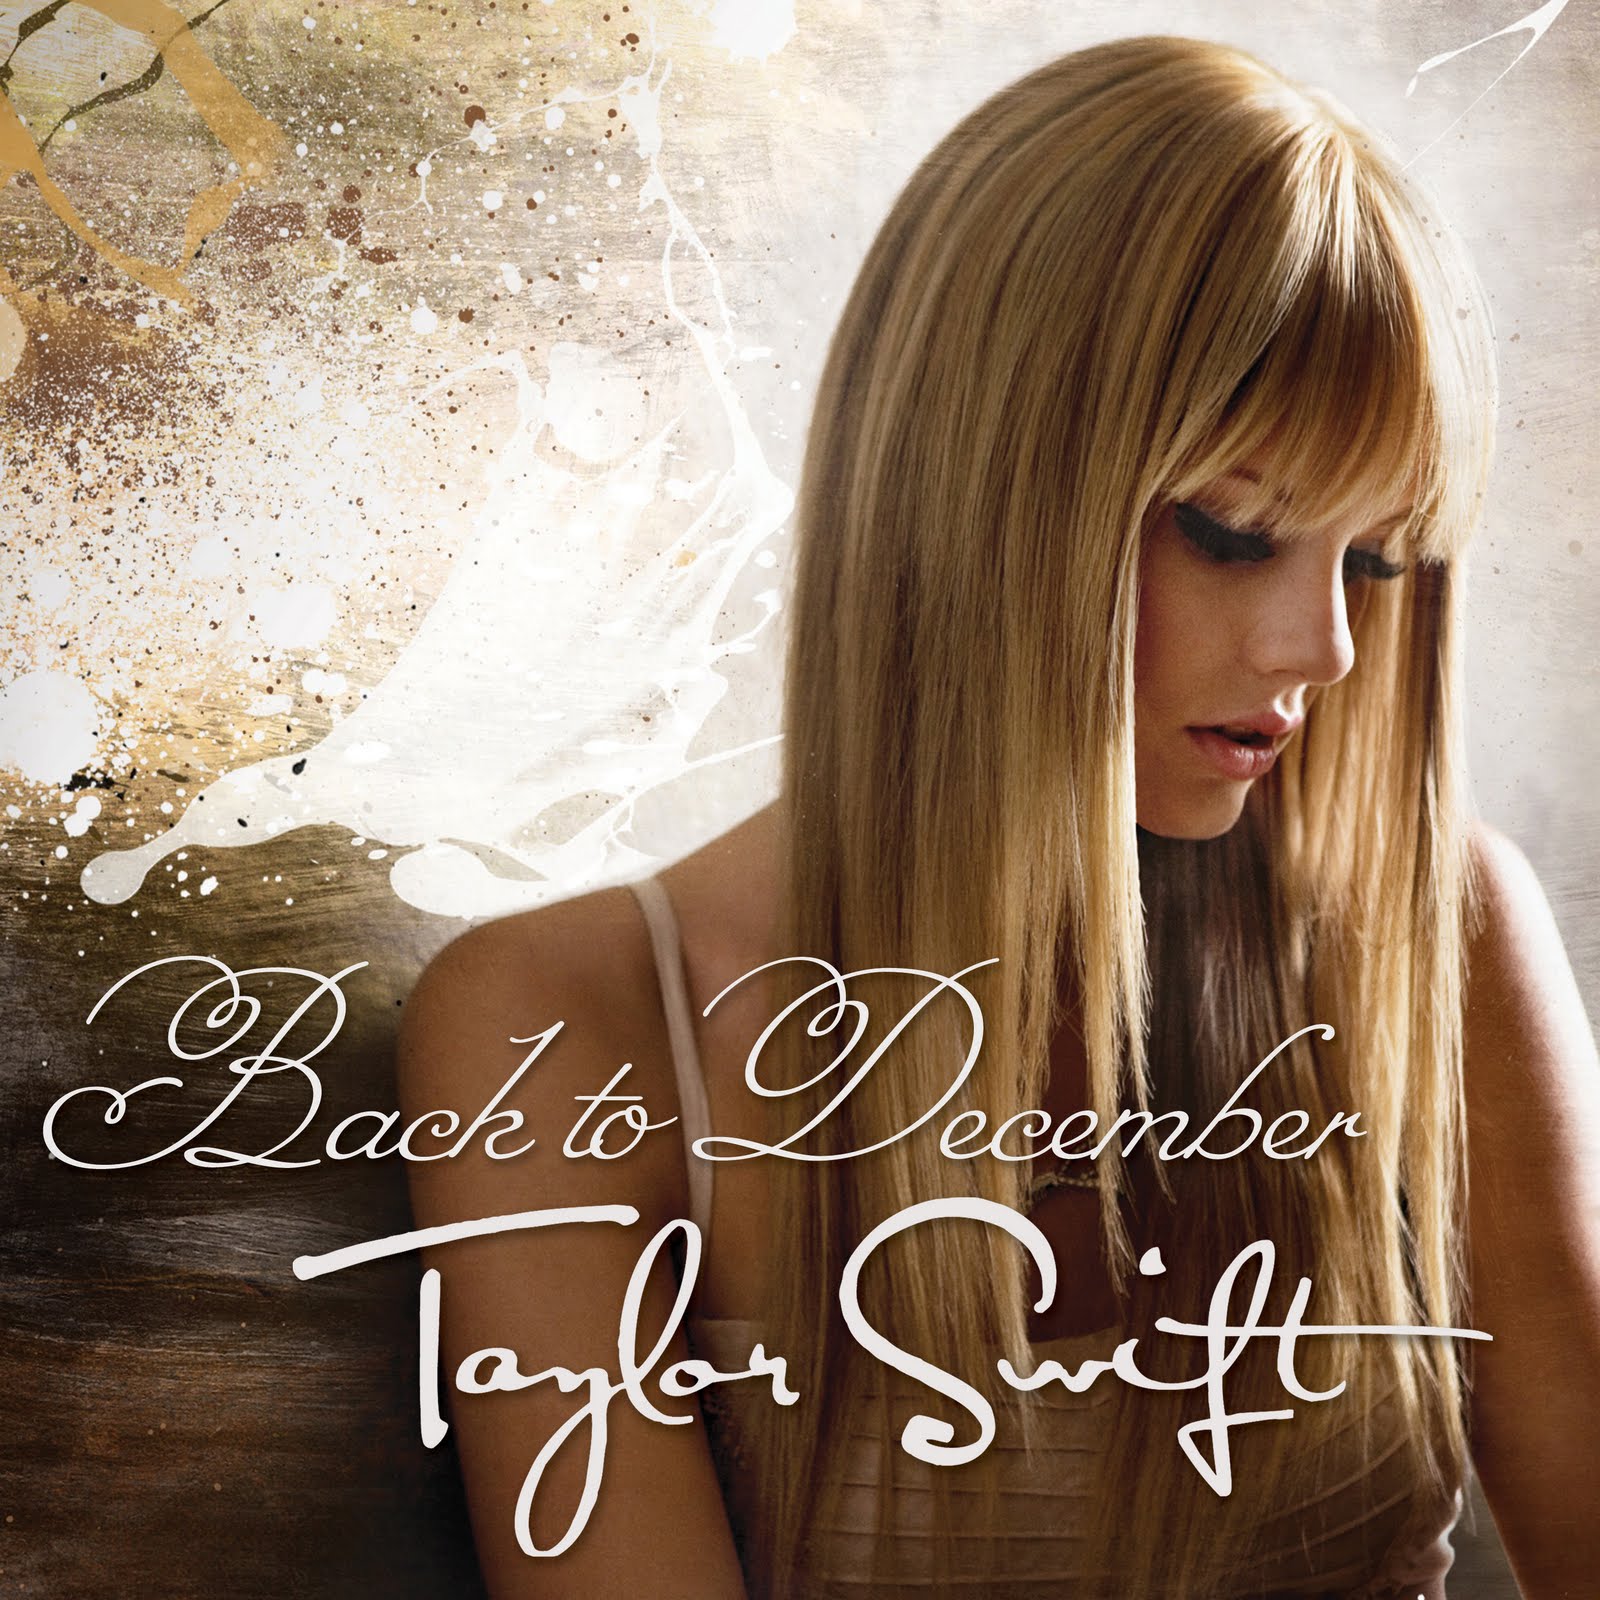 List Of Songs By Taylor Swift Taylor Swift Wiki Fandom